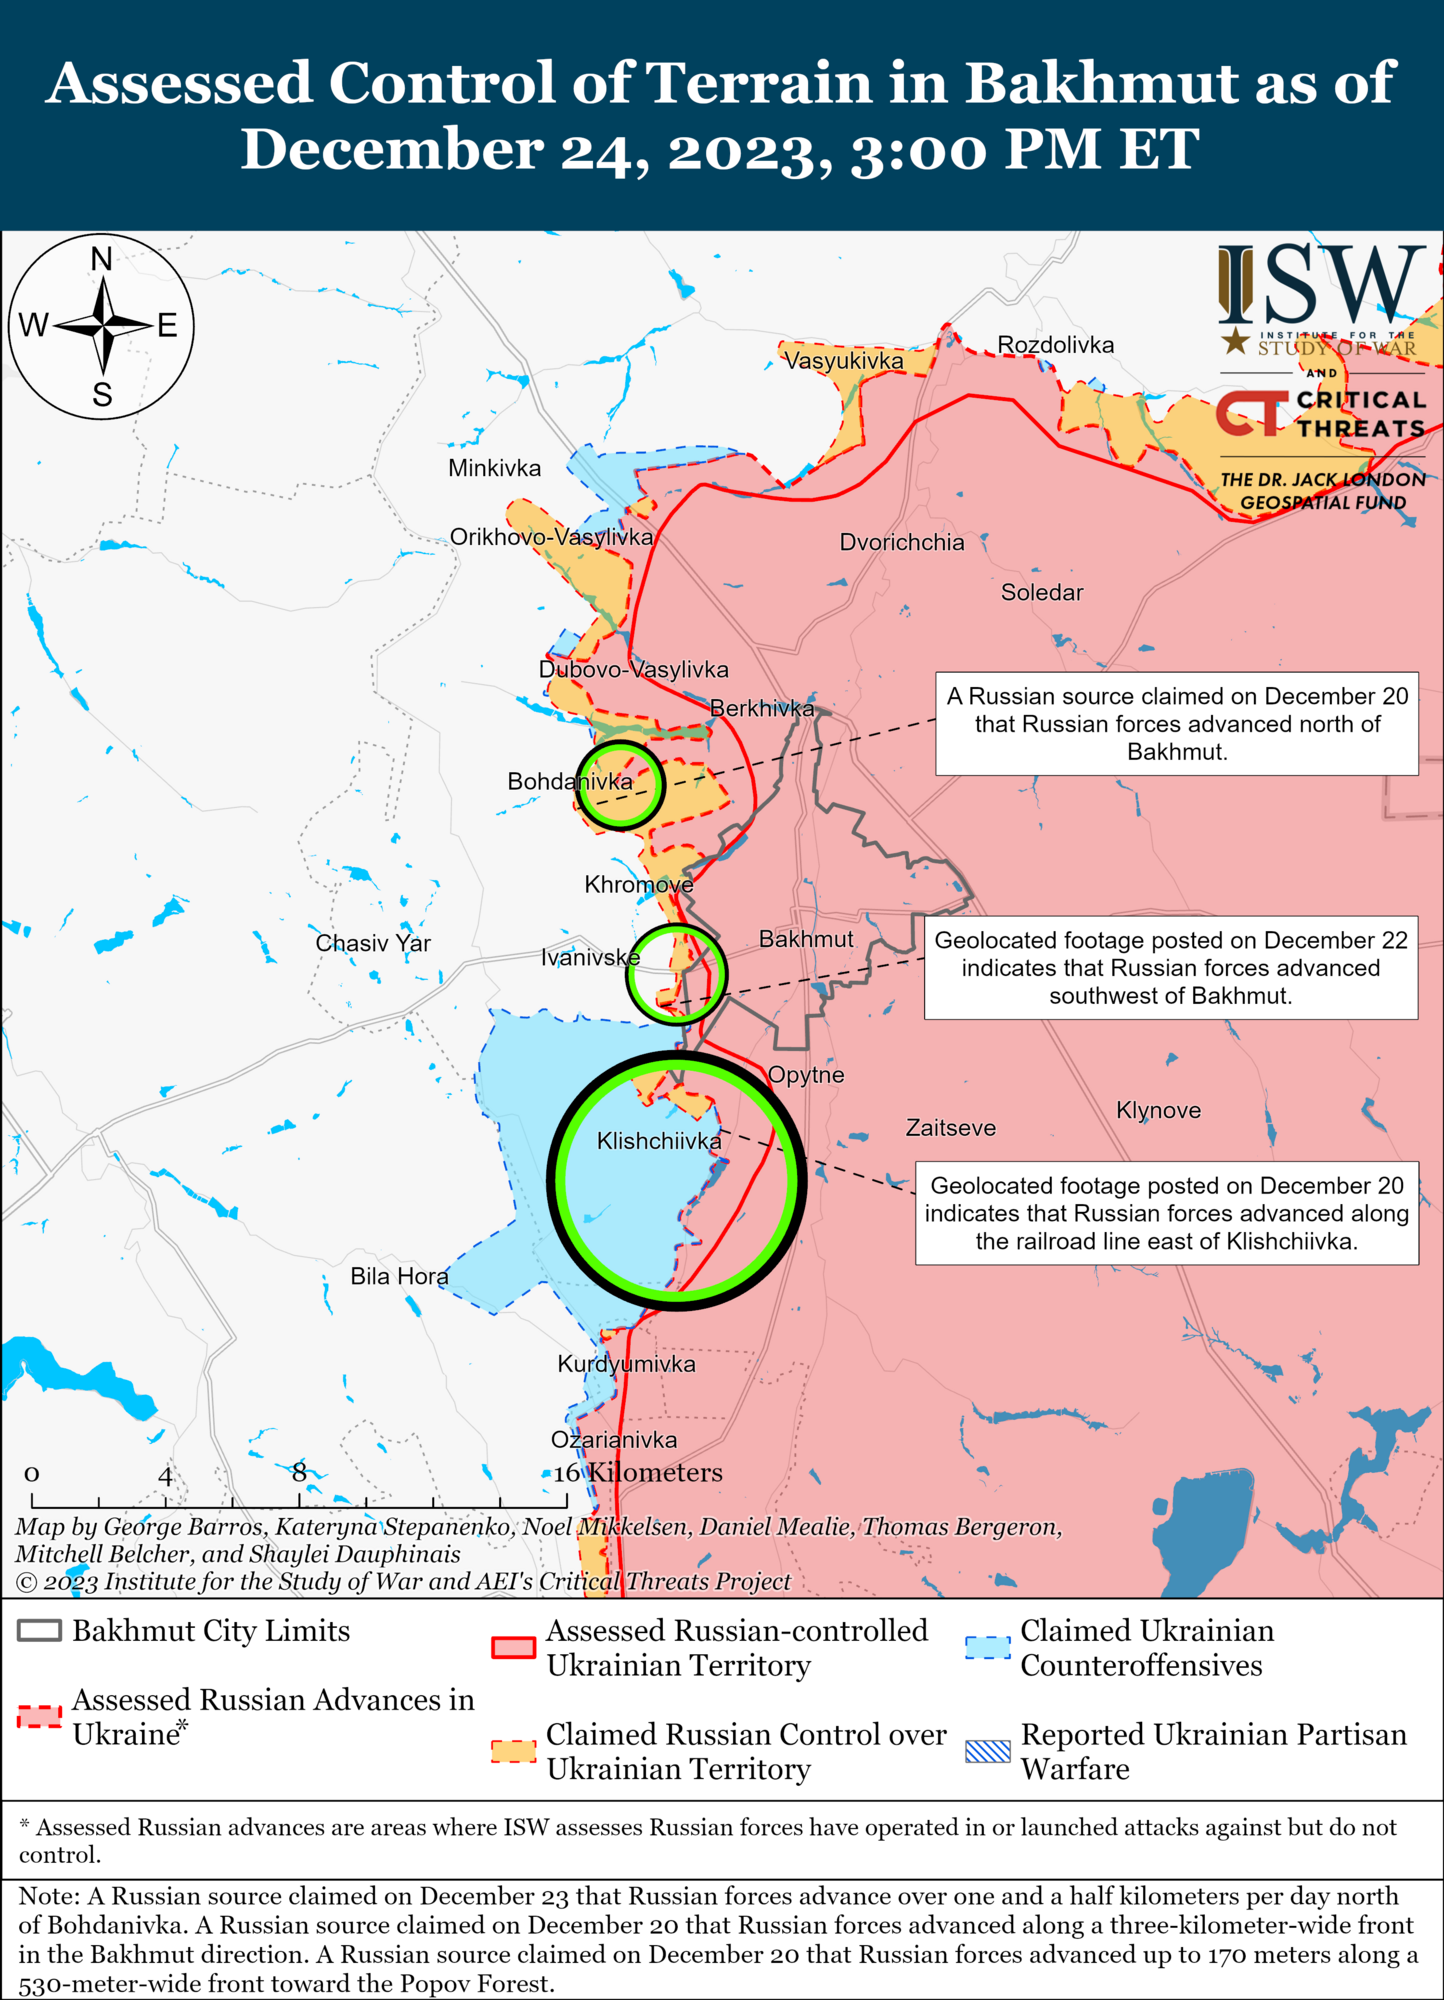 Війська РФ просунулися в районі Кремінної, ВСУ мають успіхи біля Бахмута: аналіз бойових дій від ISW